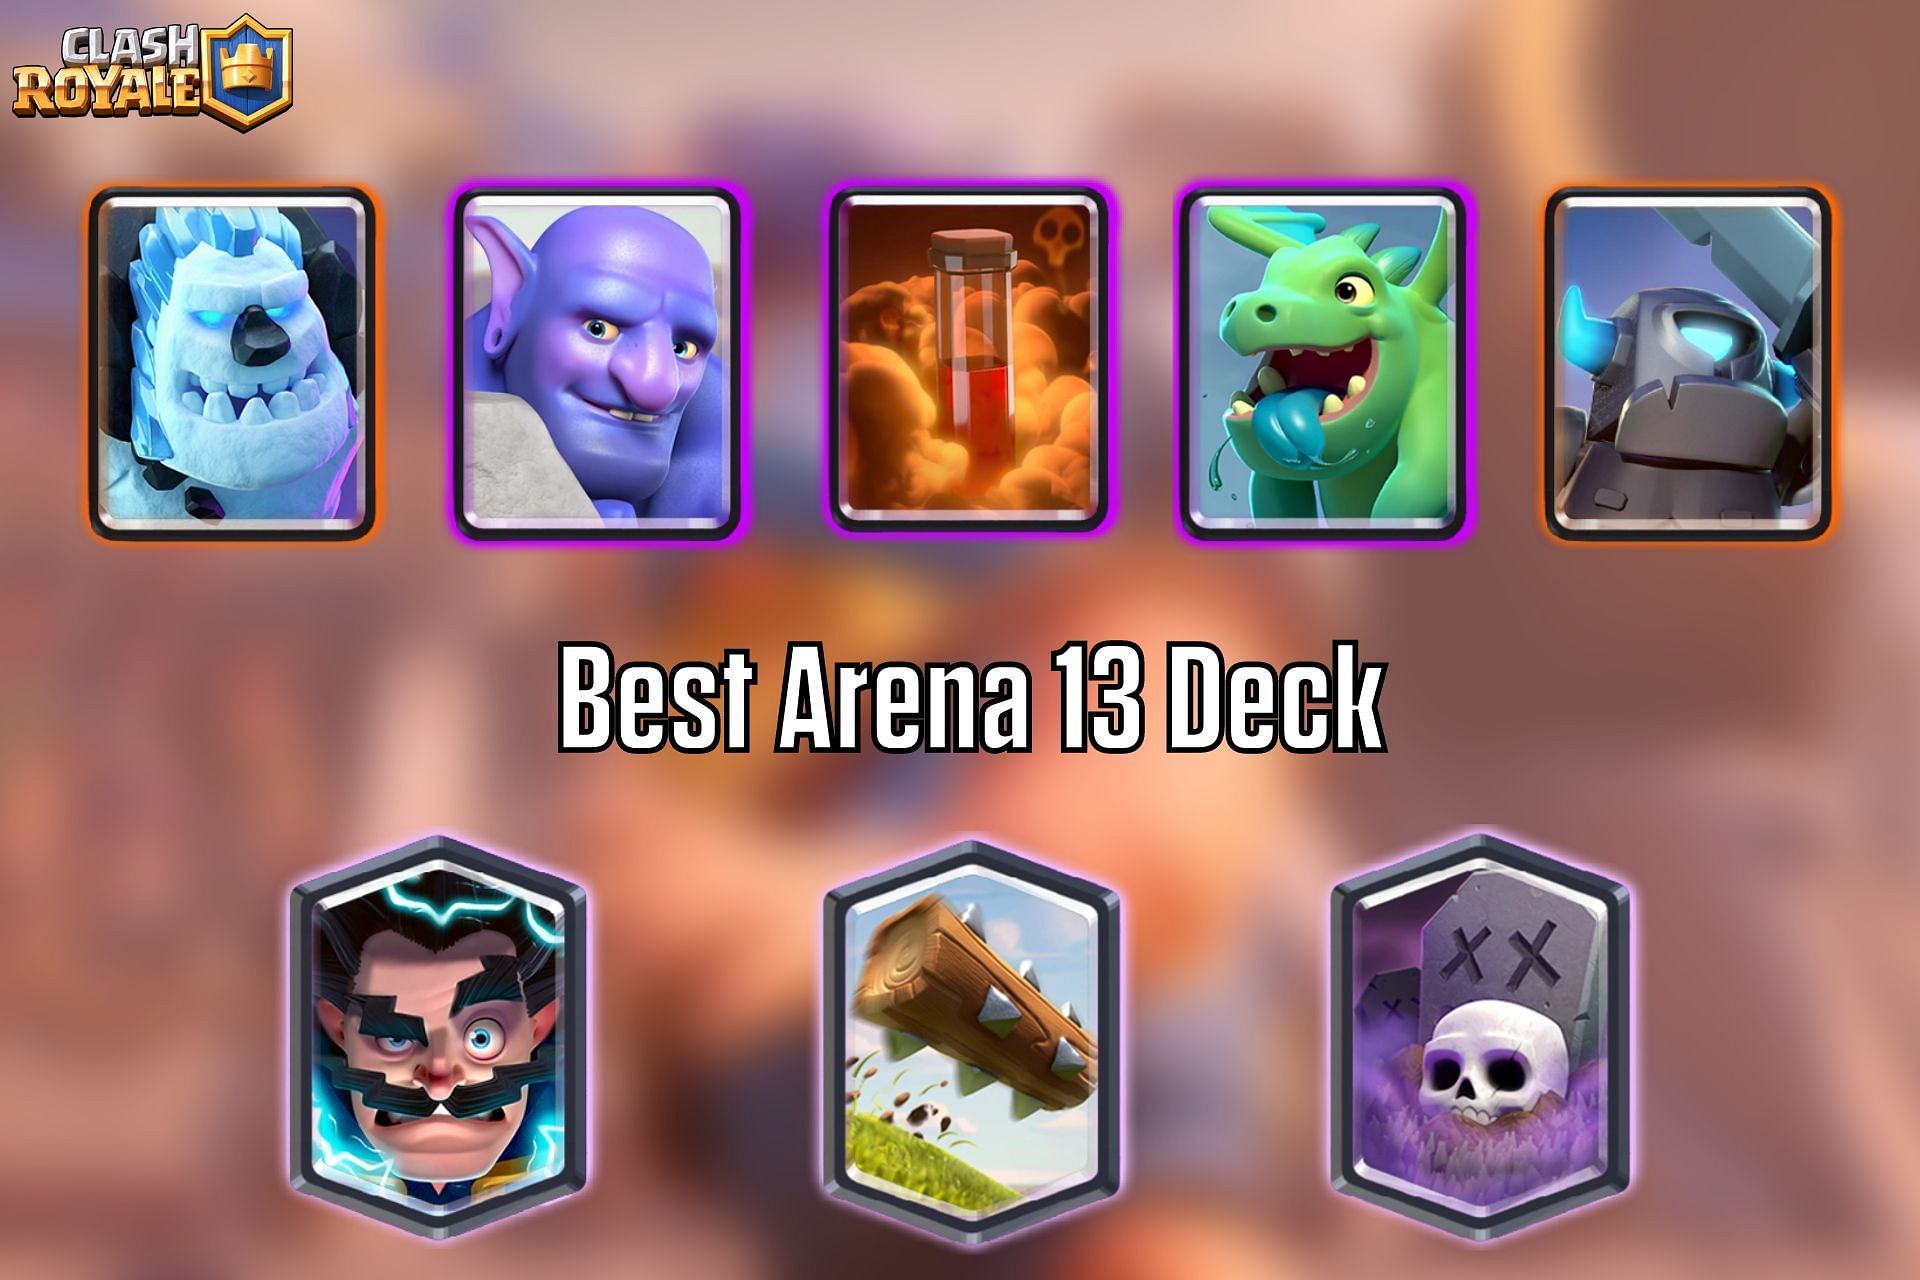 best deck in arena 6｜TikTok Search